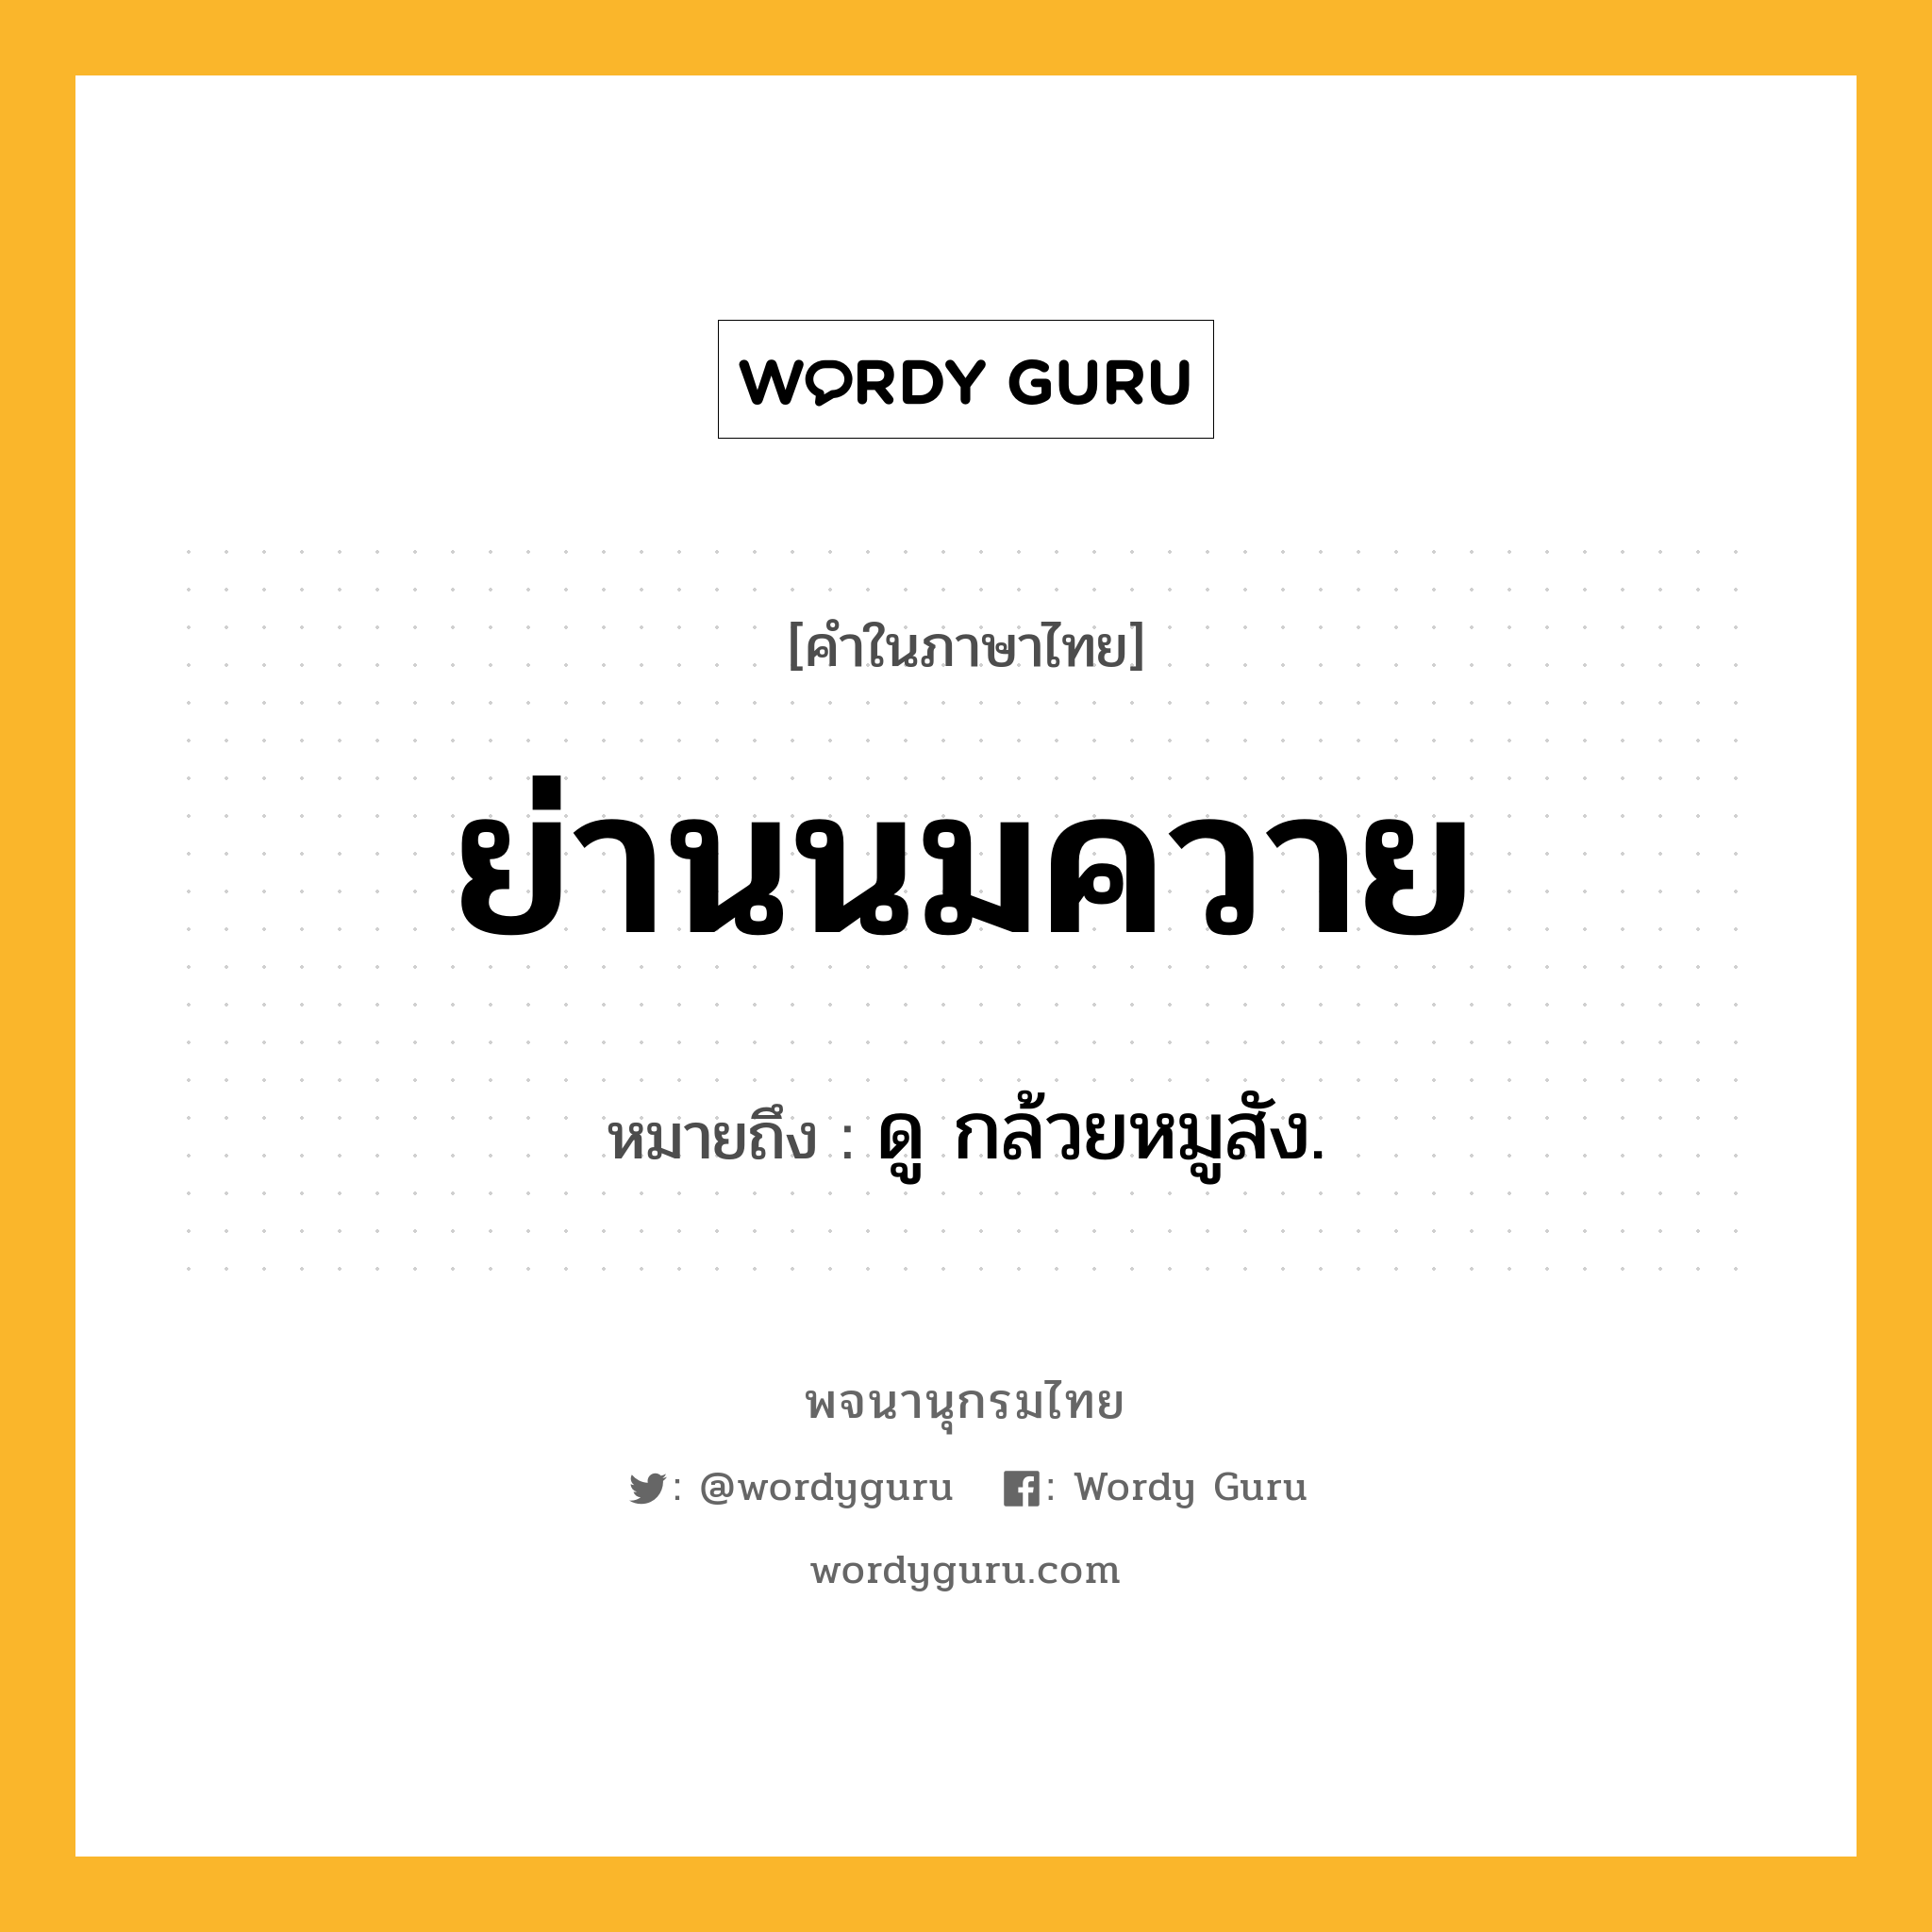 ย่านนมควาย ความหมาย หมายถึงอะไร?, คำในภาษาไทย ย่านนมควาย หมายถึง ดู กล้วยหมูสัง.